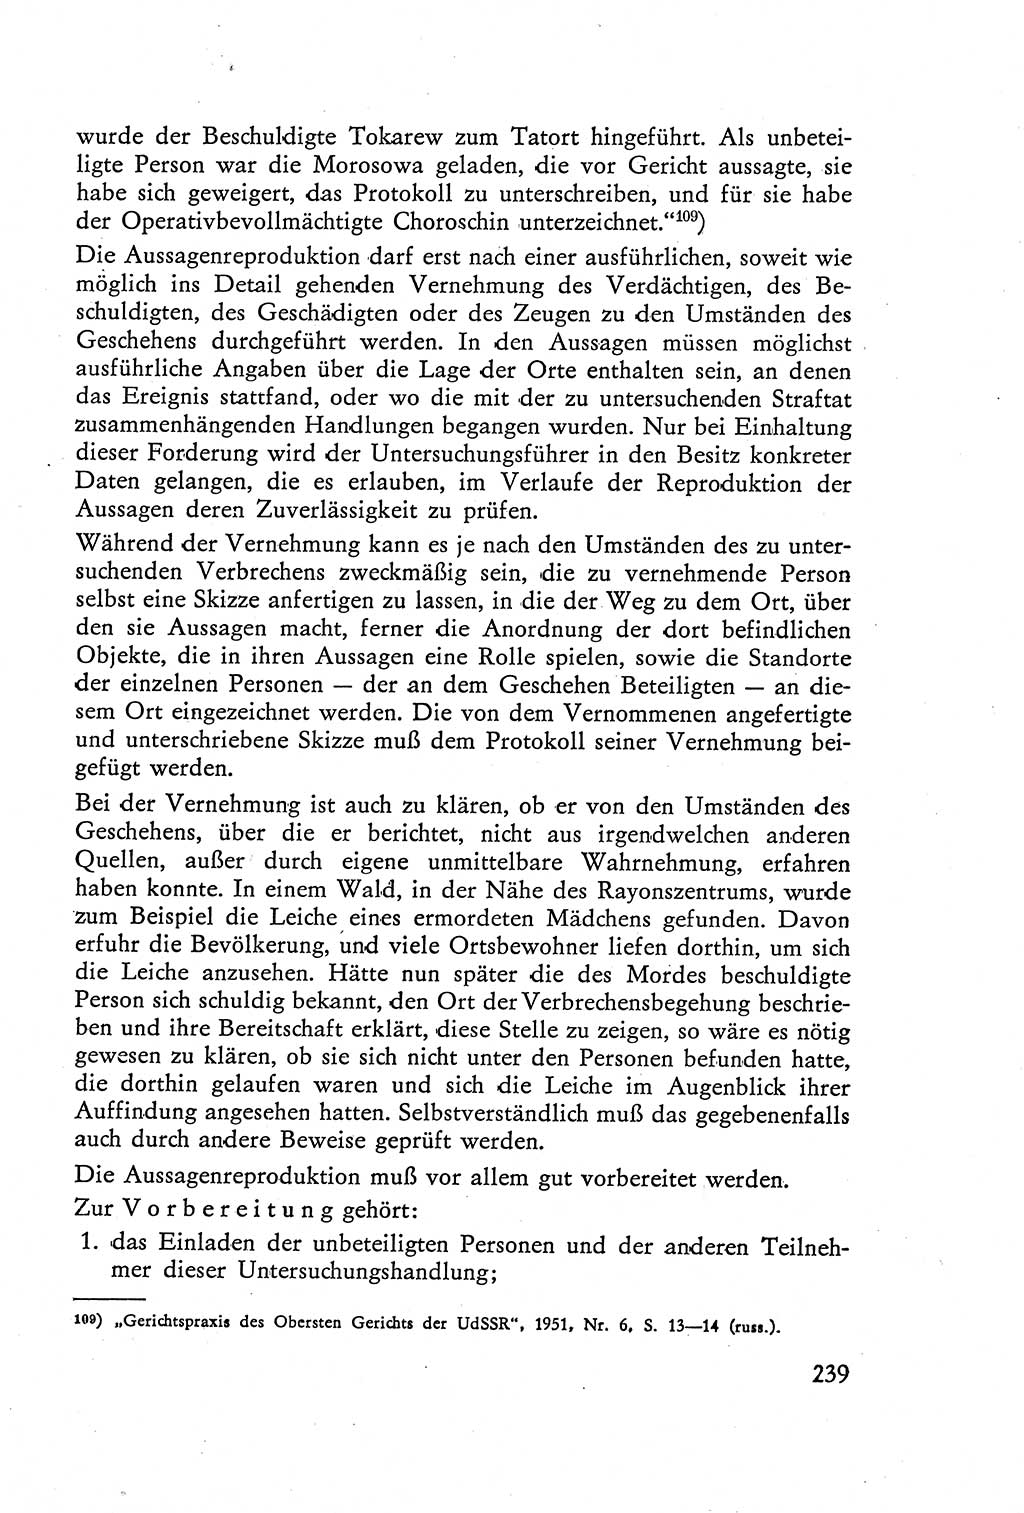 Die Vernehmung [Deutsche Demokratische Republik (DDR)] 1960, Seite 239 (Vern. DDR 1960, S. 239)